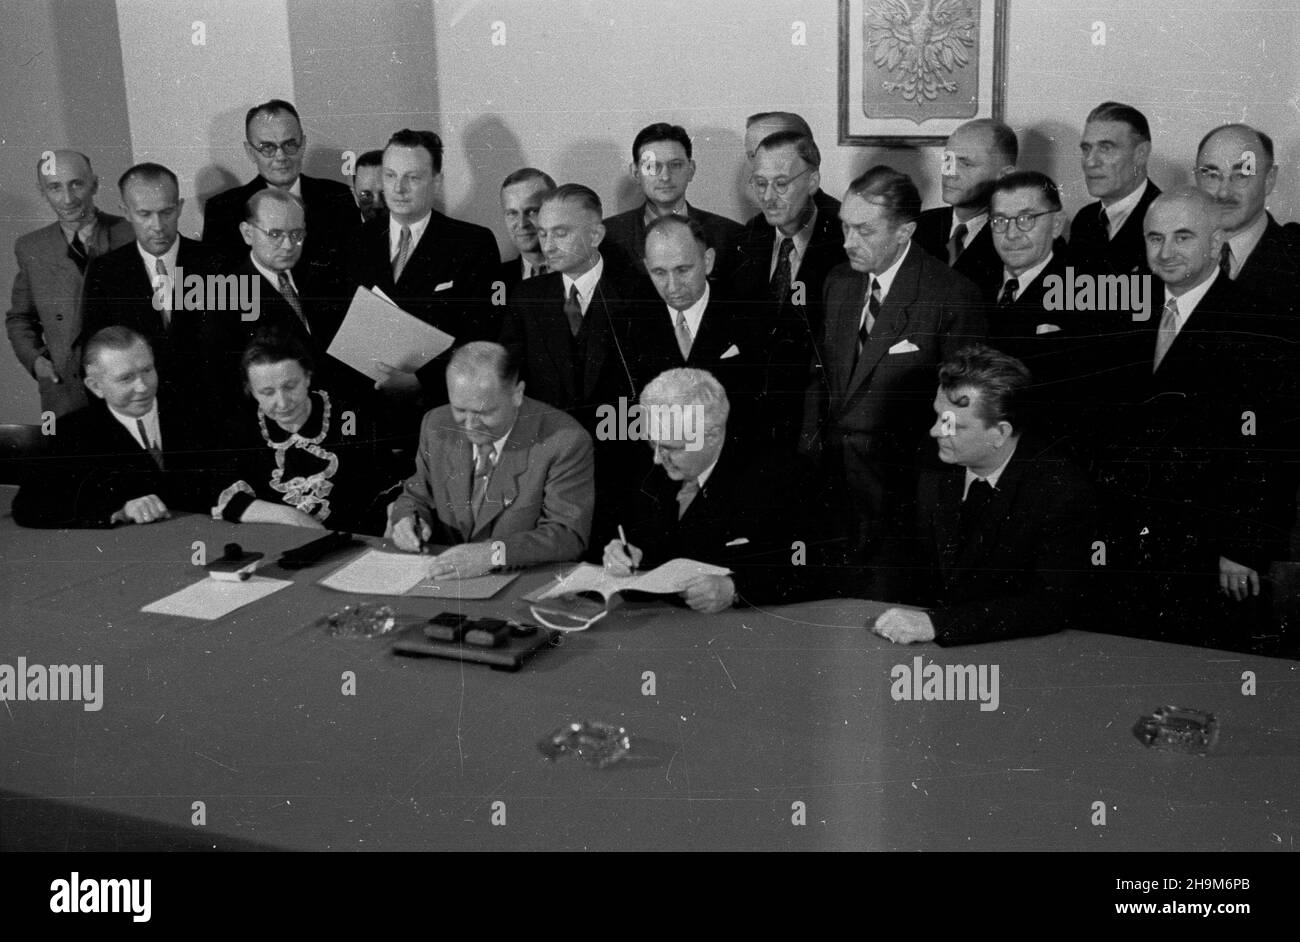 Warszawa, 1948-09-02. Podpisanie przez Polskê i Czechos³owacjê umowy pocztowo-telegraficznej. Nz. za sto³em siedz¹, m.in.: czeski minister poczt dr Alois Neuman (3L), minister poczt i telegrafów prof. Wac³aw Szymanowski (2P). ka  PAP      Warsaw, Sept. 2, 1948. Poland and Czechoslovakia sign an agreement on posts and telegraphs. Pictured: Czech Post Minister Alois Neuman (3rd left), Post and Telegraphs Minister Professor Waclaw Szymanowski (2nd right).  ka  PAP Stock Photo